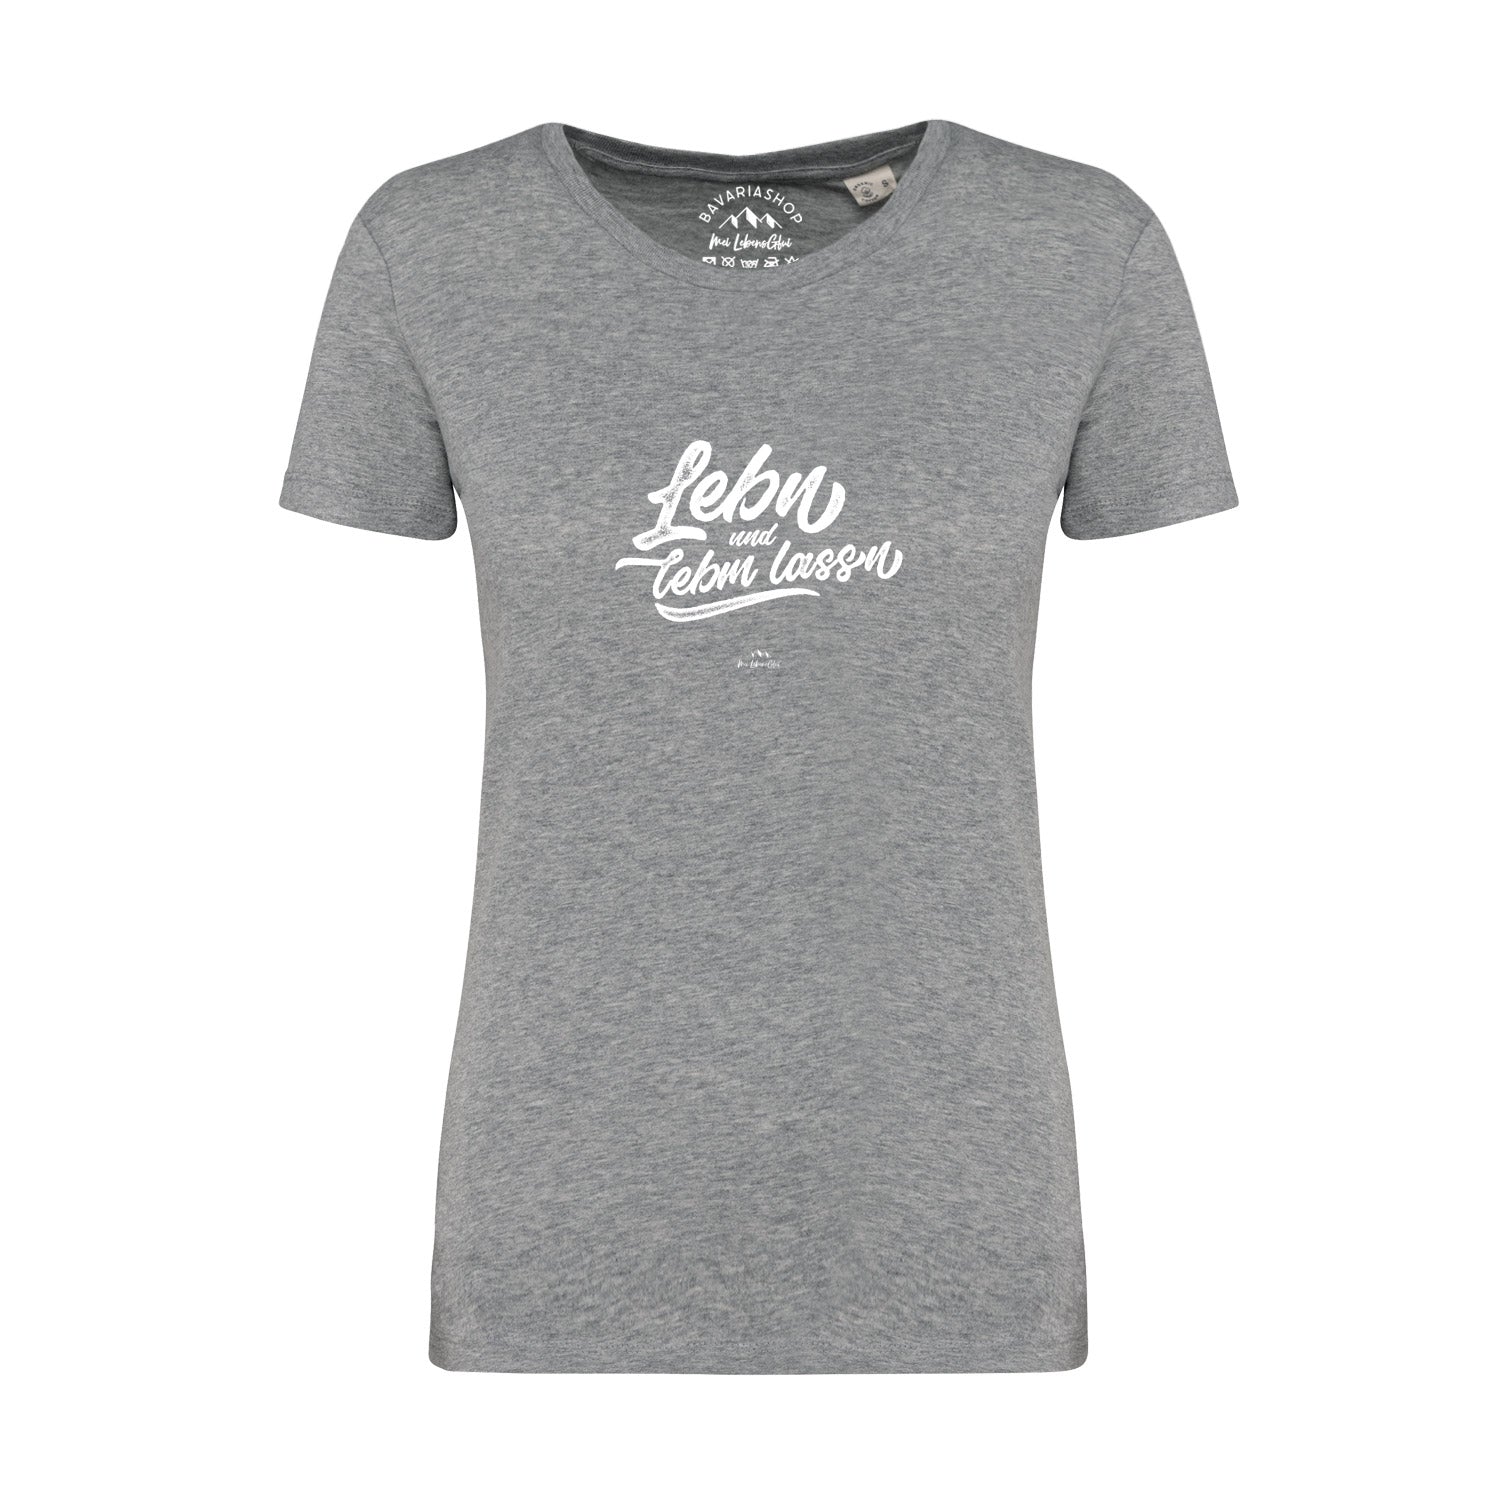 Damen T-Shirt "Lebn und lebm lassn"